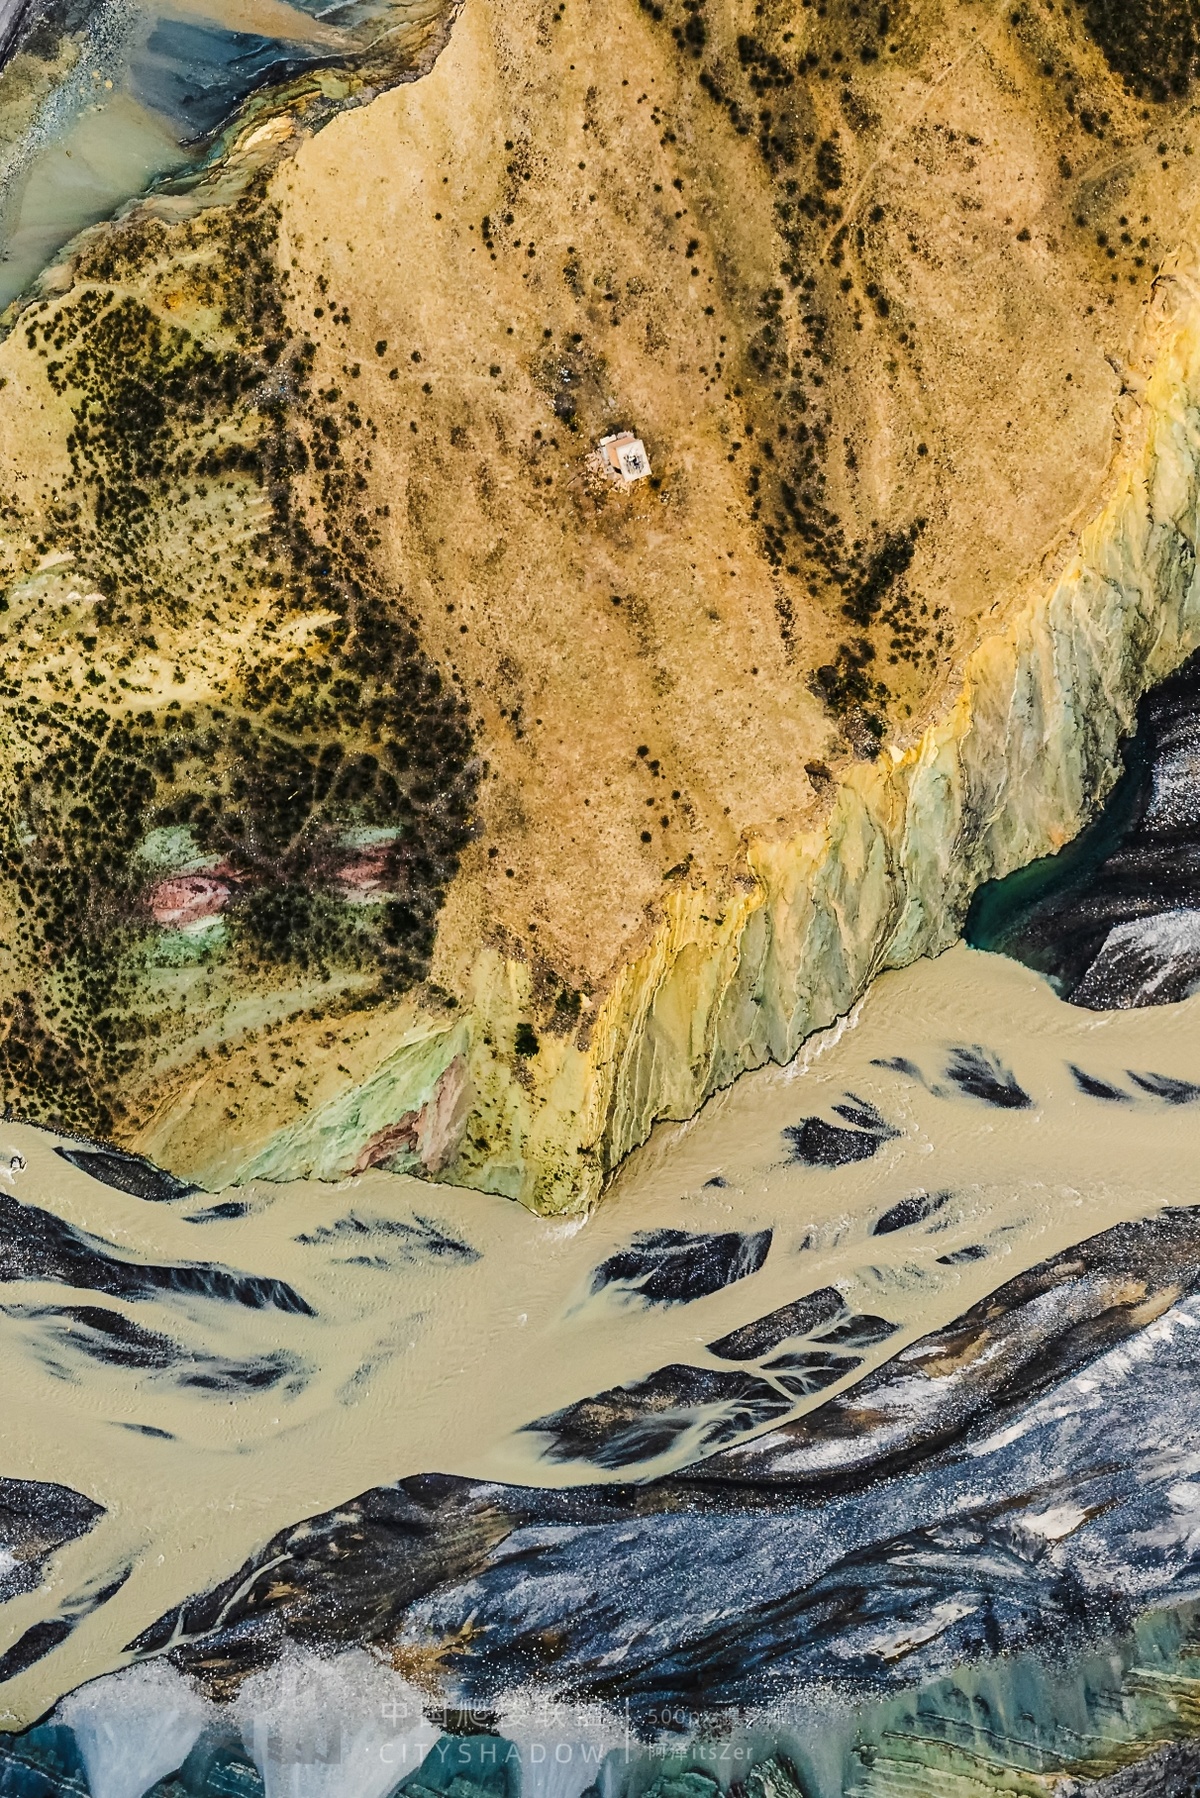 河岸边的风景画 描绘了一条河流穿过岩石和山脉的景观。